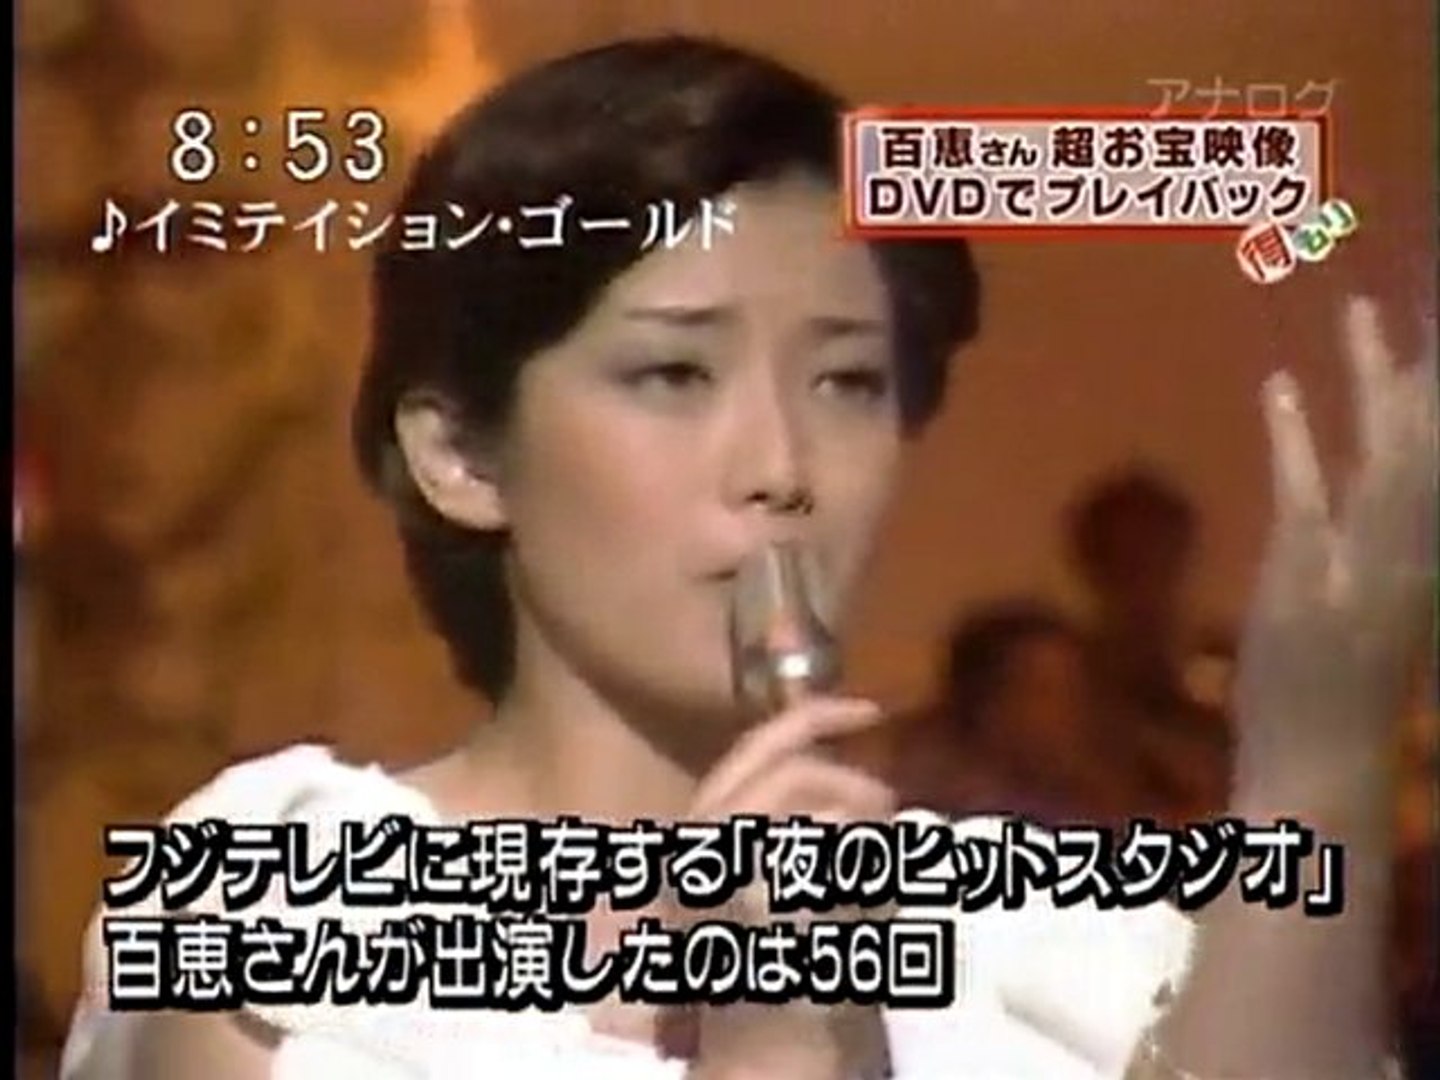 山口百恵(Momoe Yamaguchi) in 夜のヒットスタジオ」 DVD-BOX 発売予告映像 1 - video Dailymotion